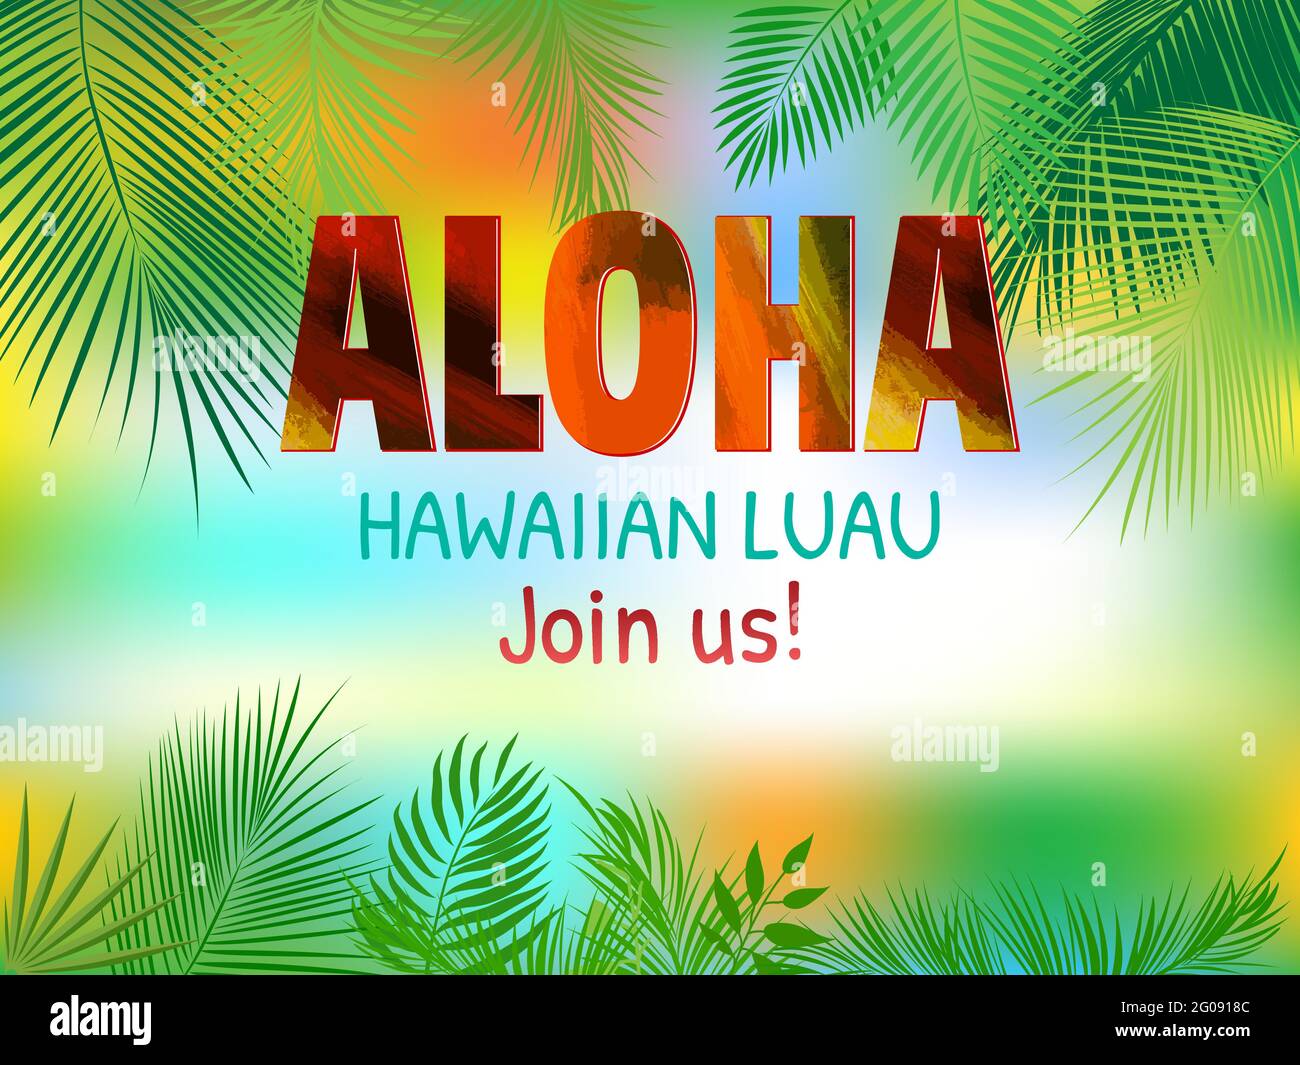 Thiết kế Hawaii sáng tạo là một cách tuyệt vời để thể hiện tình yêu với hòn đảo thiên đường này. Hãy cùng trải nghiệm những thiết kế đậm chất Hawaii, sáng tạo và độc đáo chỉ có ở đây.